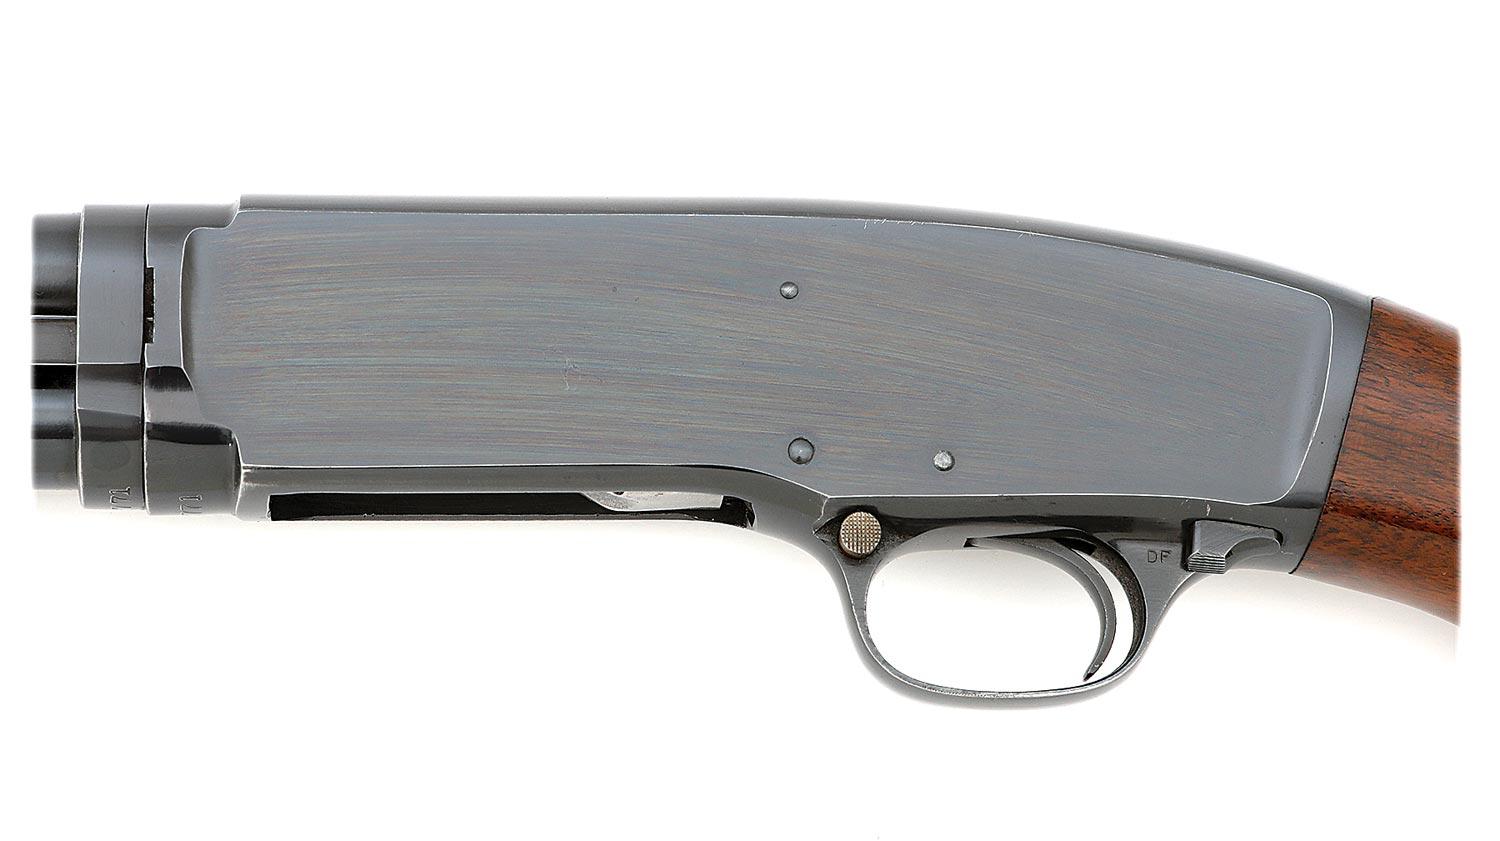 Winchester Model 42 Slide Action Shotgun